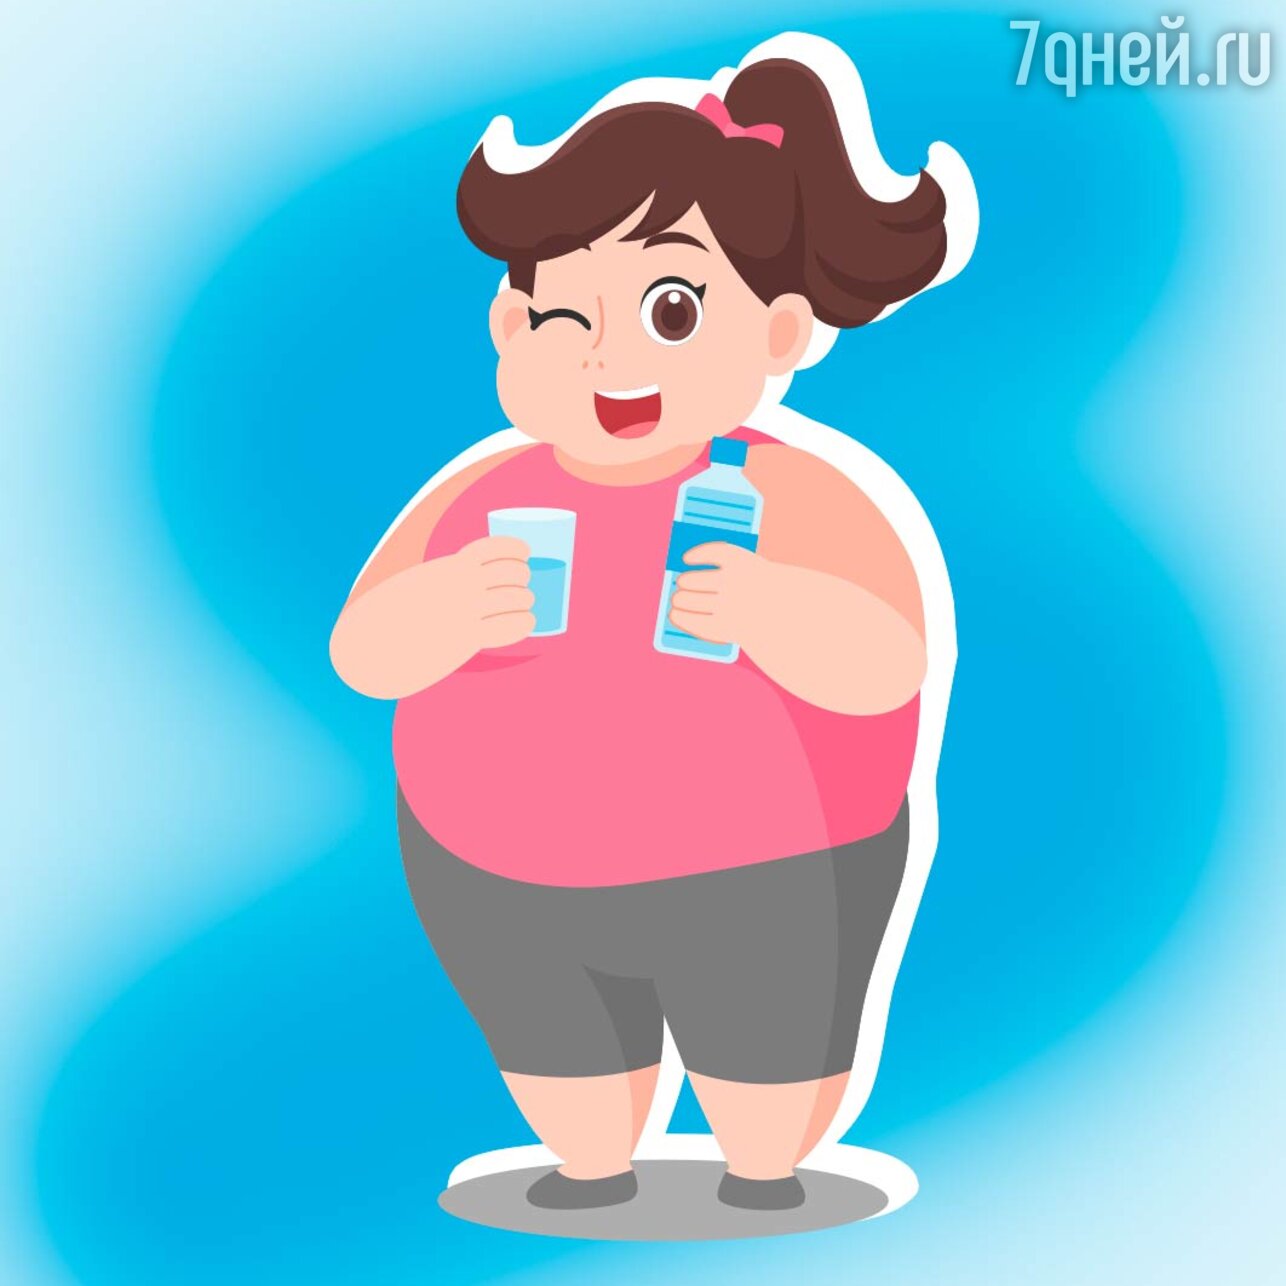 пить воду при похудении